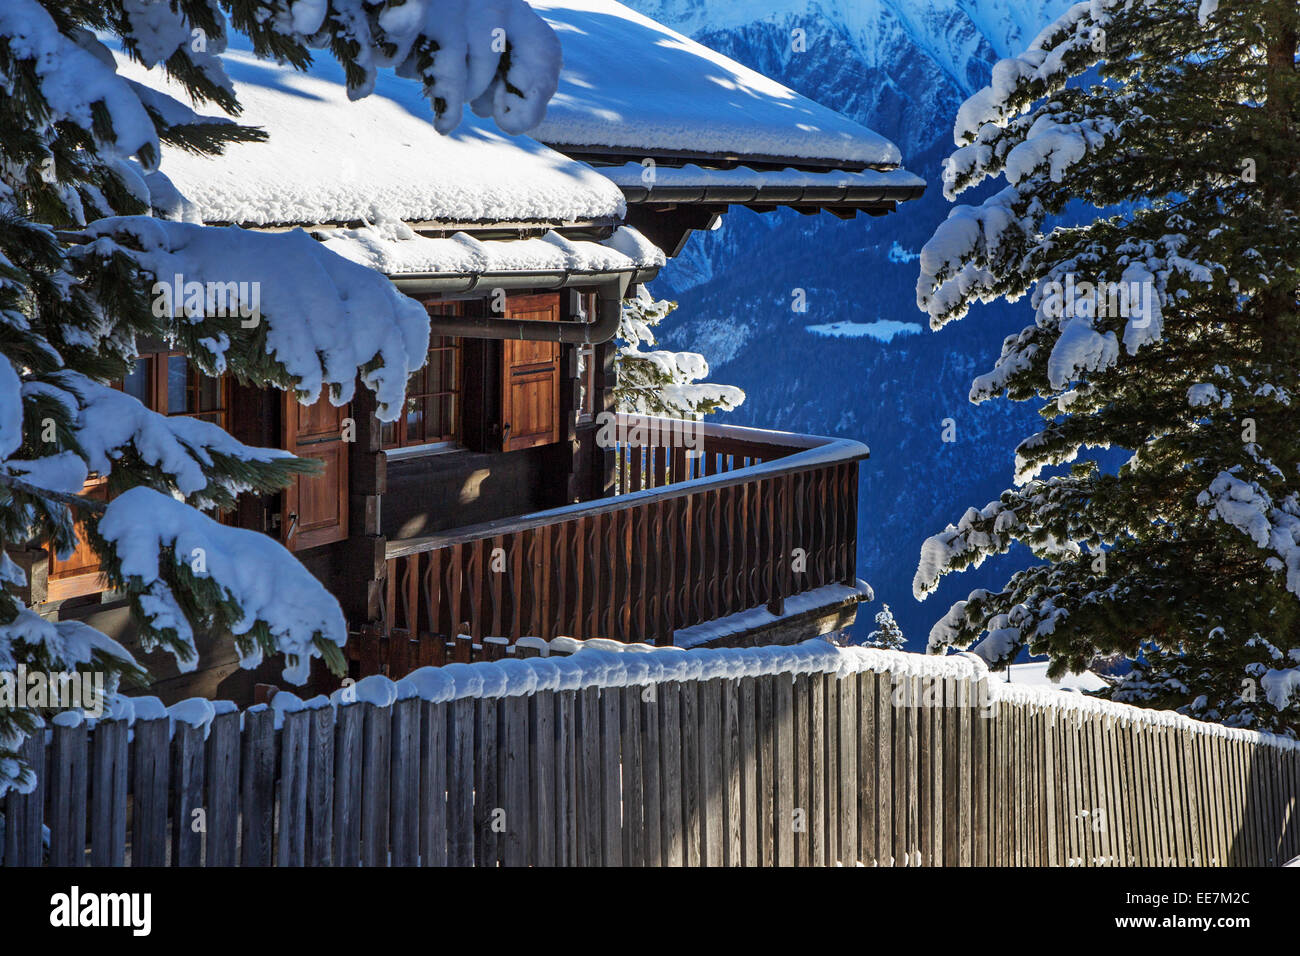 Coperta di neve Swiss chalet in legno in inverno nelle Alpi, Wallis / Valais, Svizzera Foto Stock